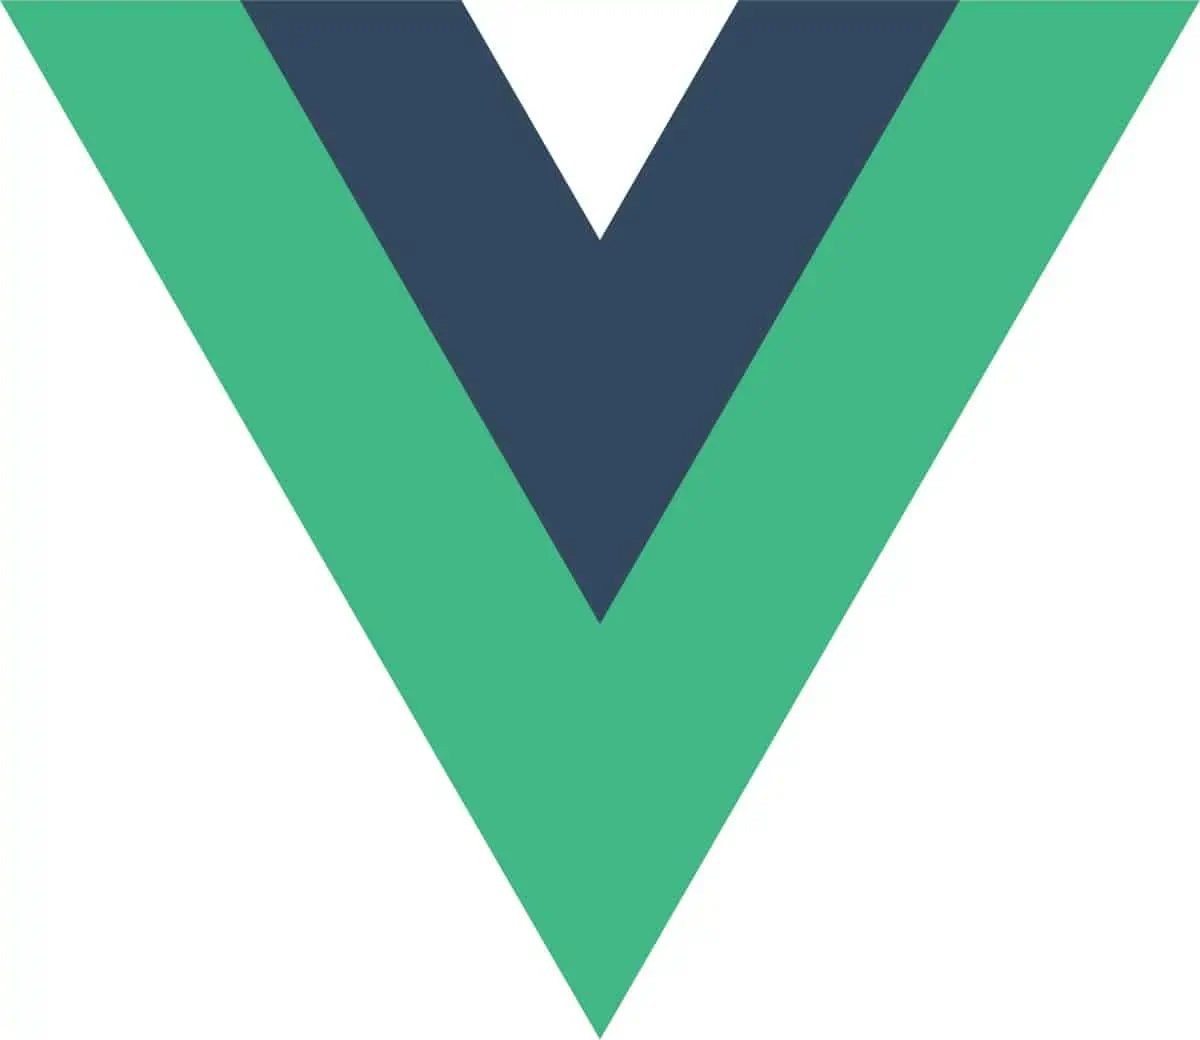 Vue.js Benefits for Developers!